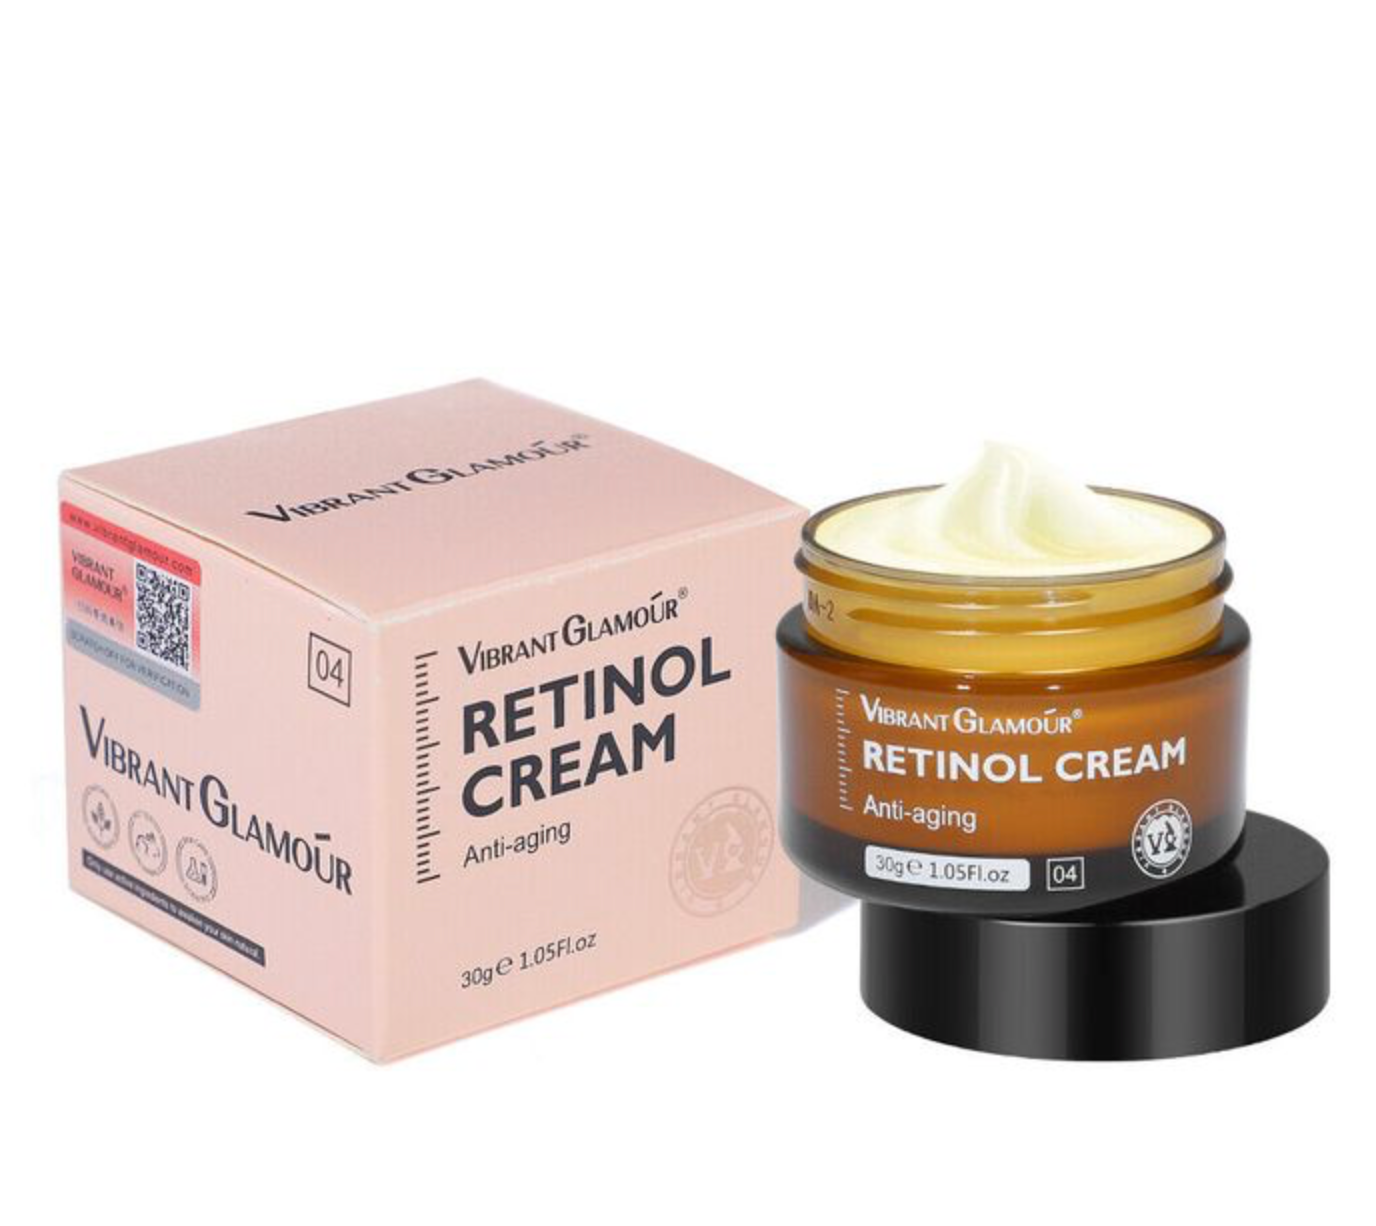 Vibrant Glamour Retinol cream